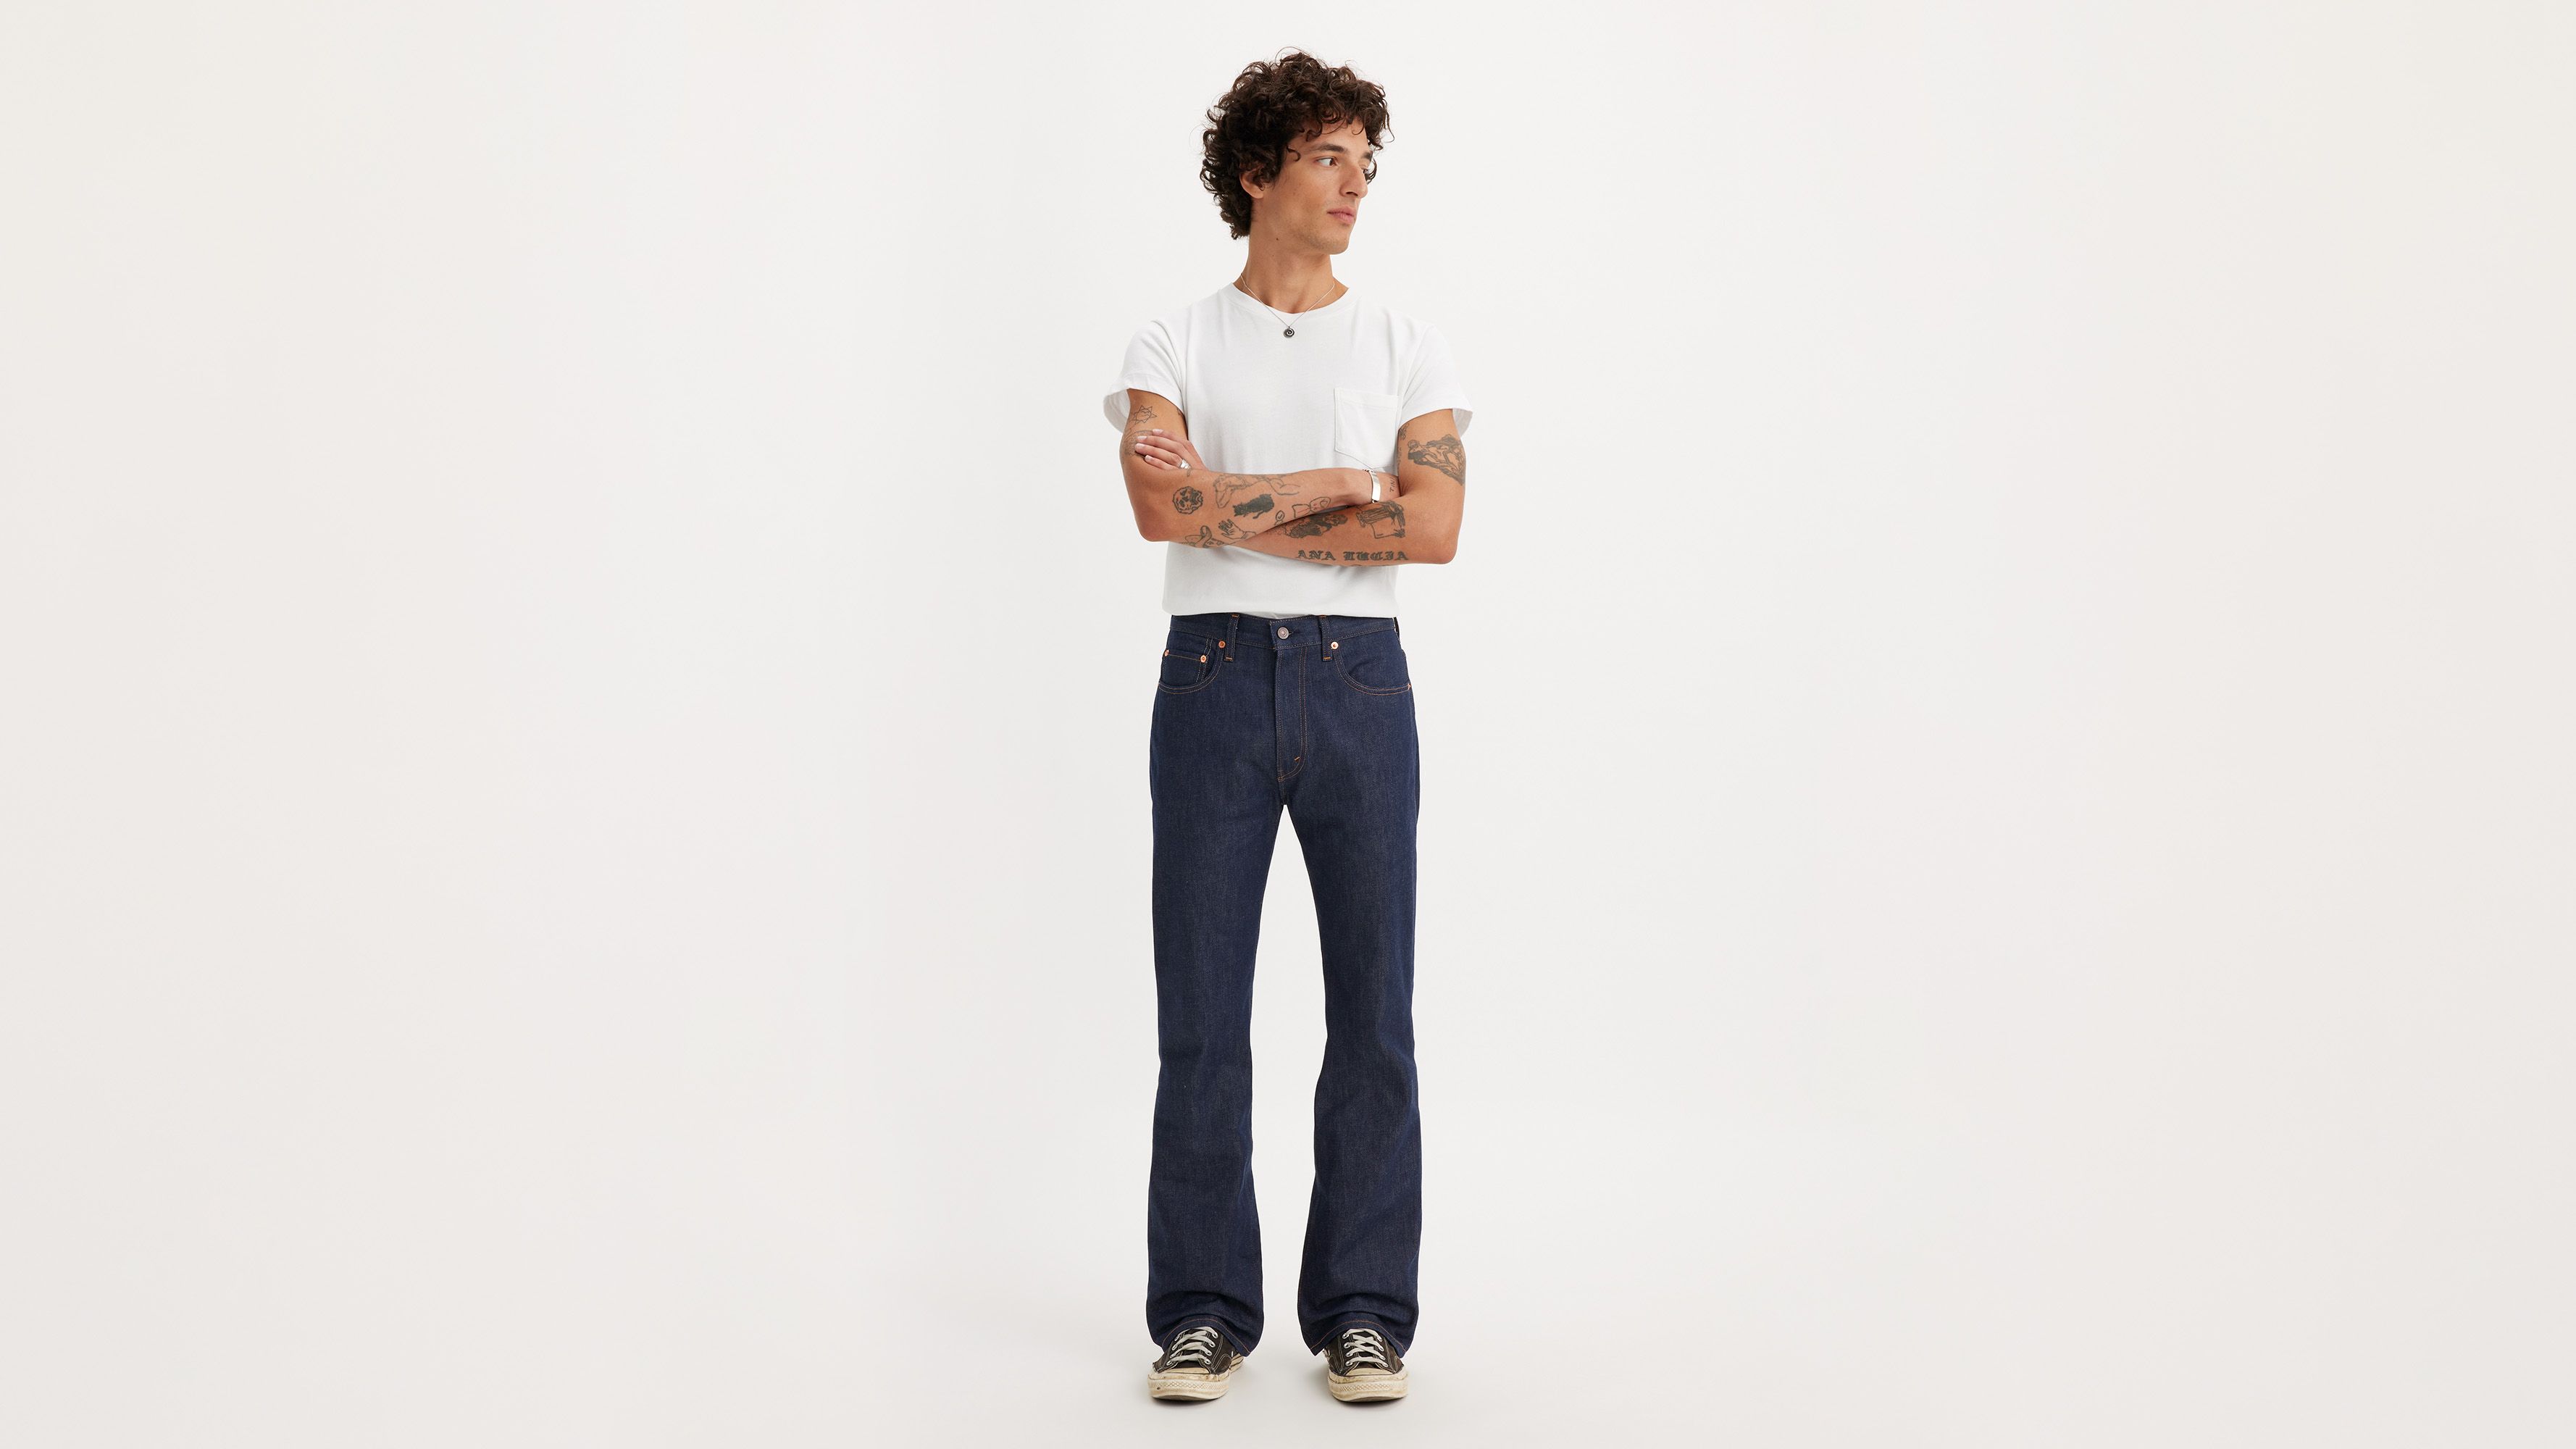 Levi's® Vintage Clothing 1970s 517™ Bootcut Jeans - Blue | Levi's® MC